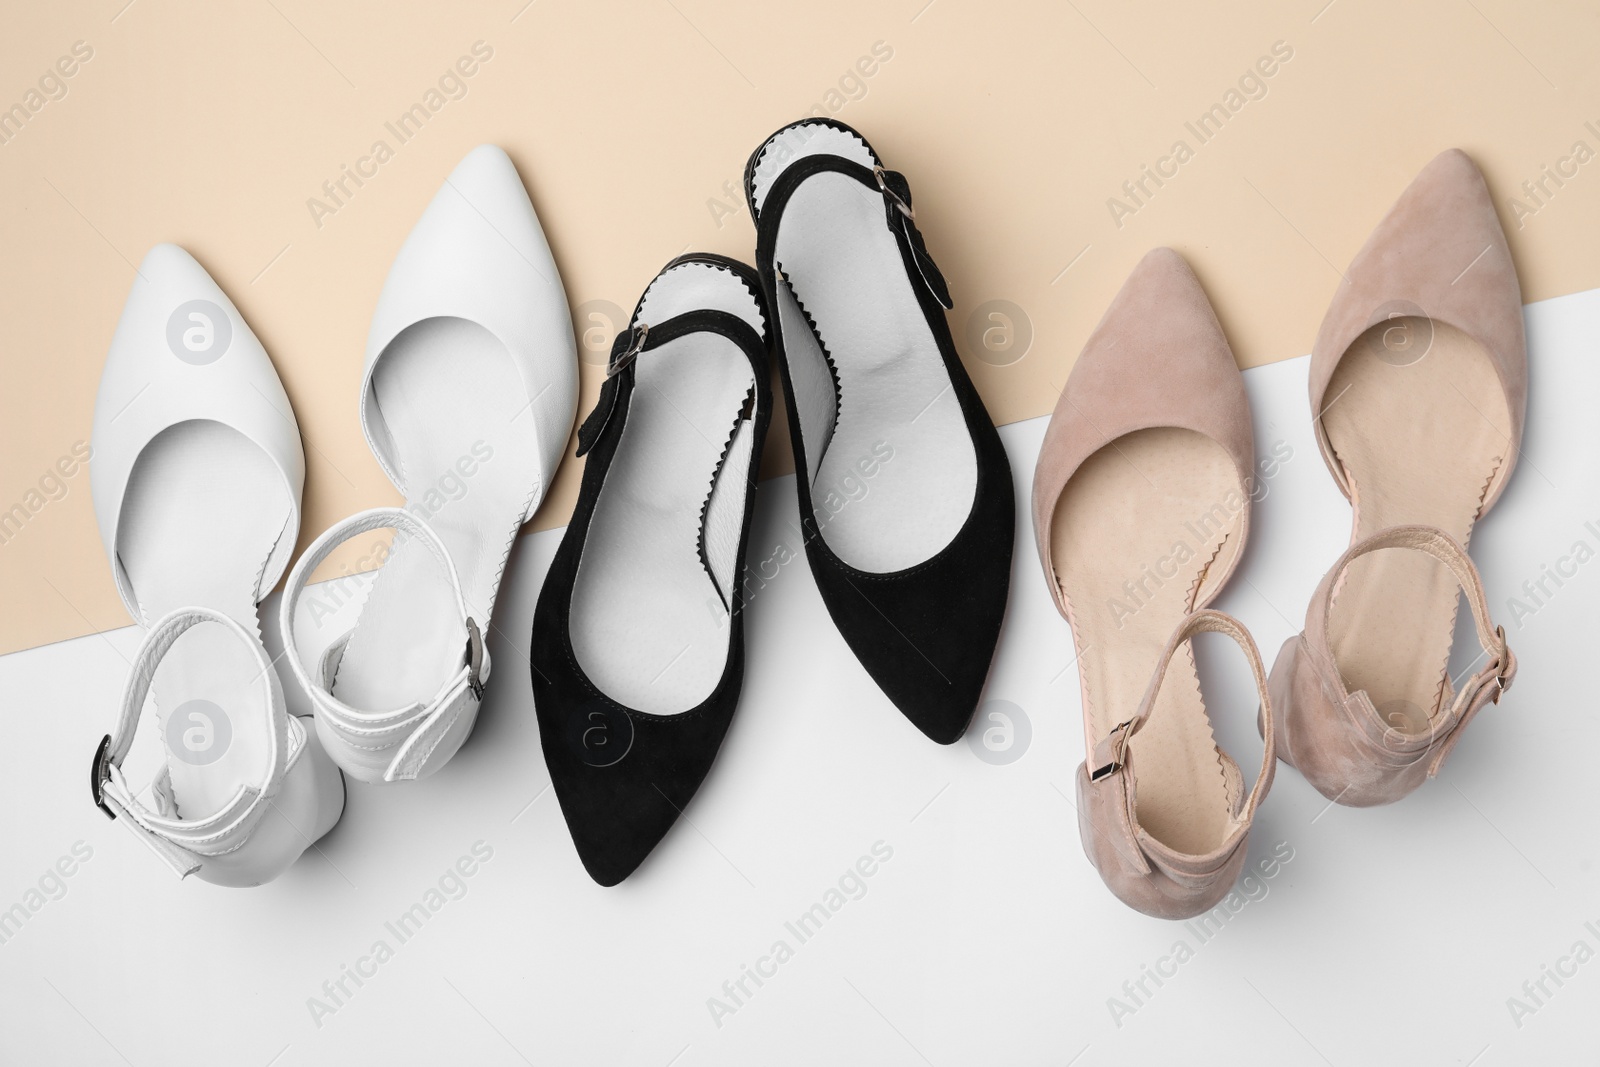 Photo of Many stylish female shoes on color background, flat lay